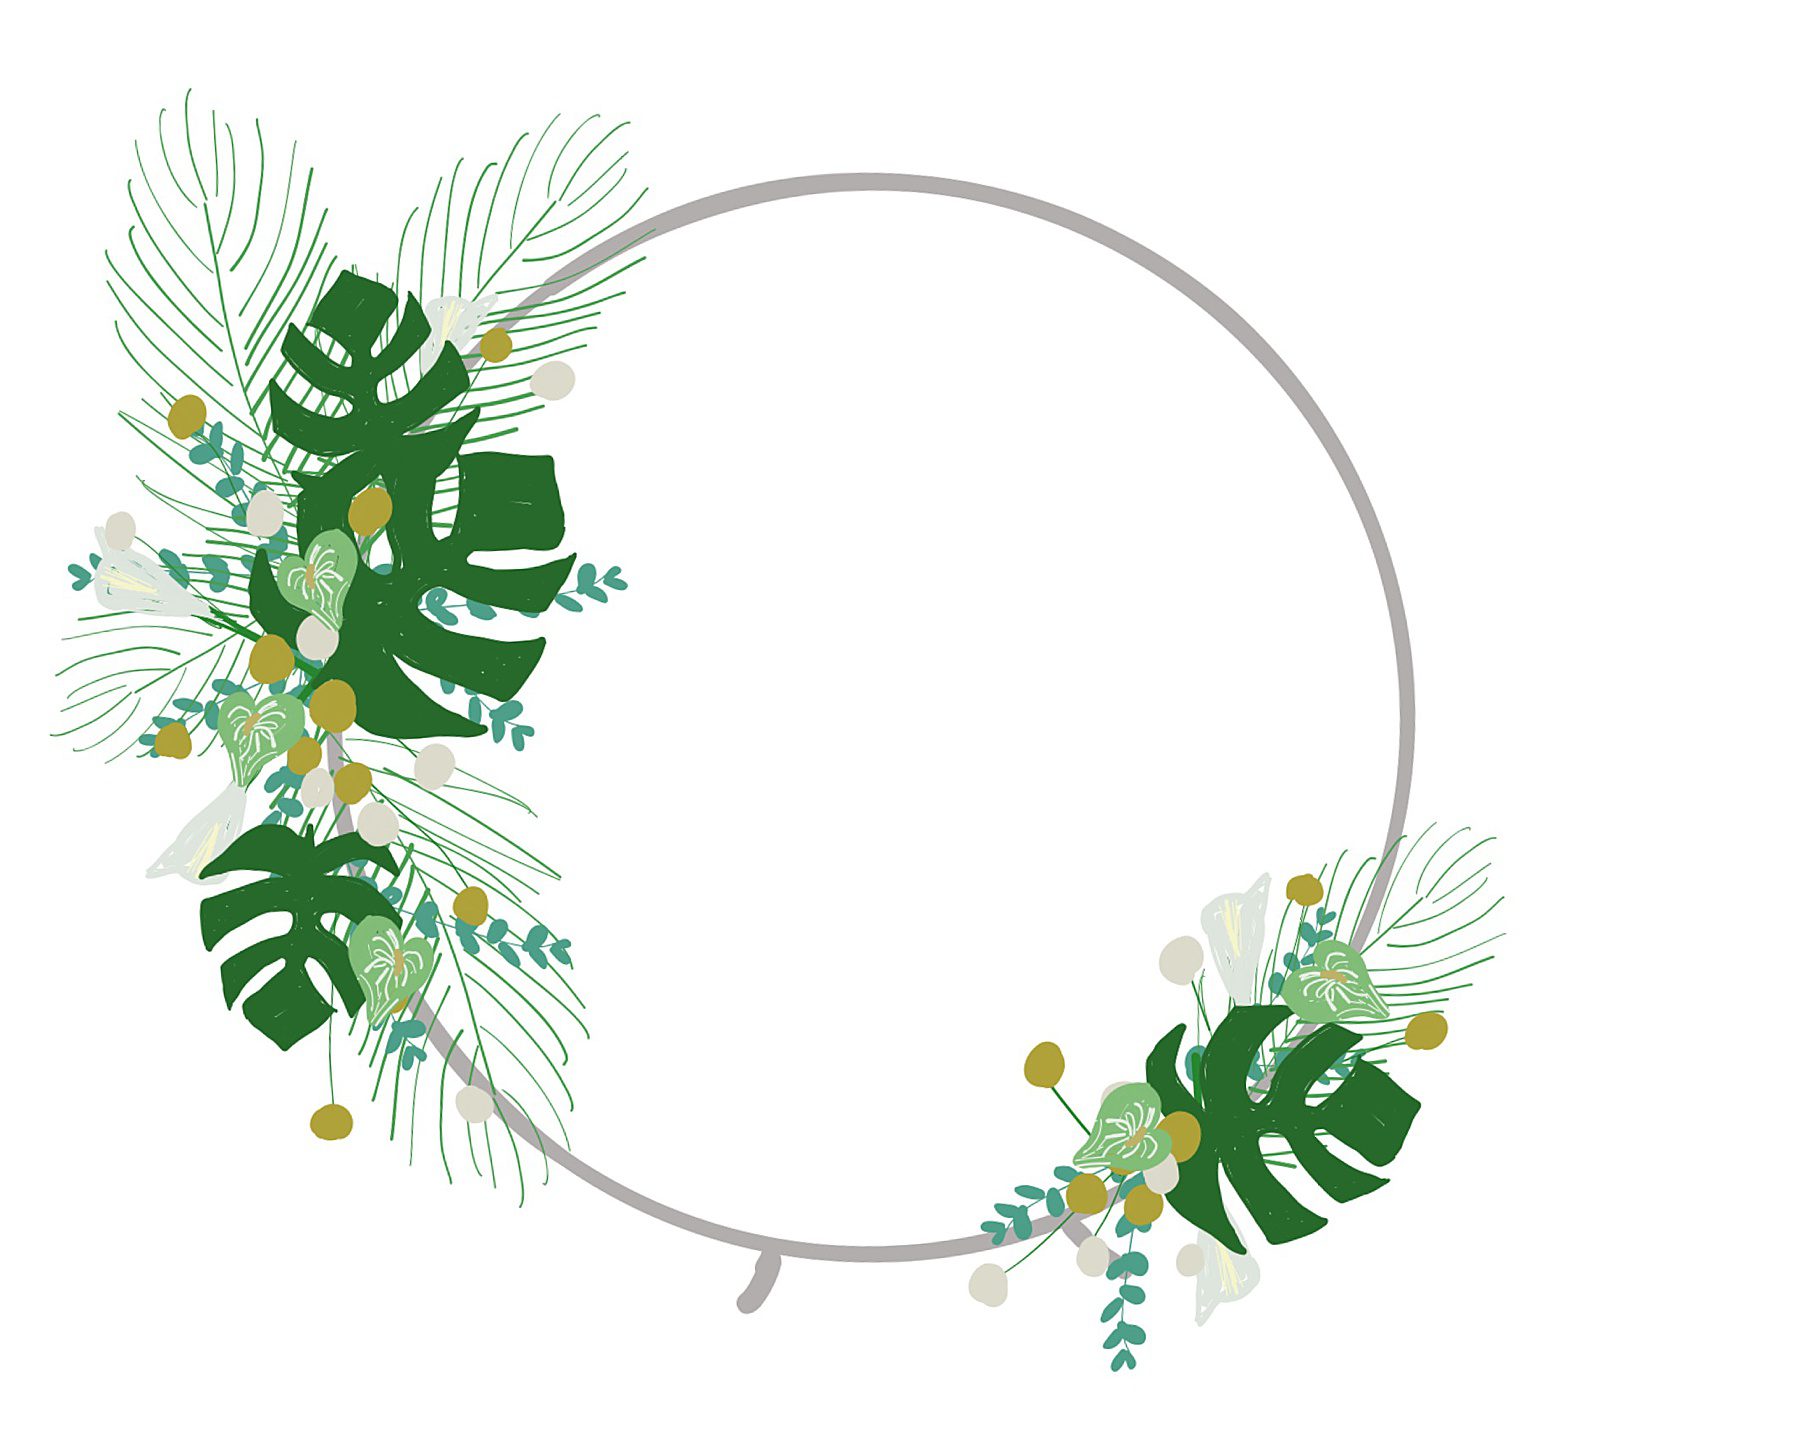 an asymmetric floral conceptual design on a circle arch